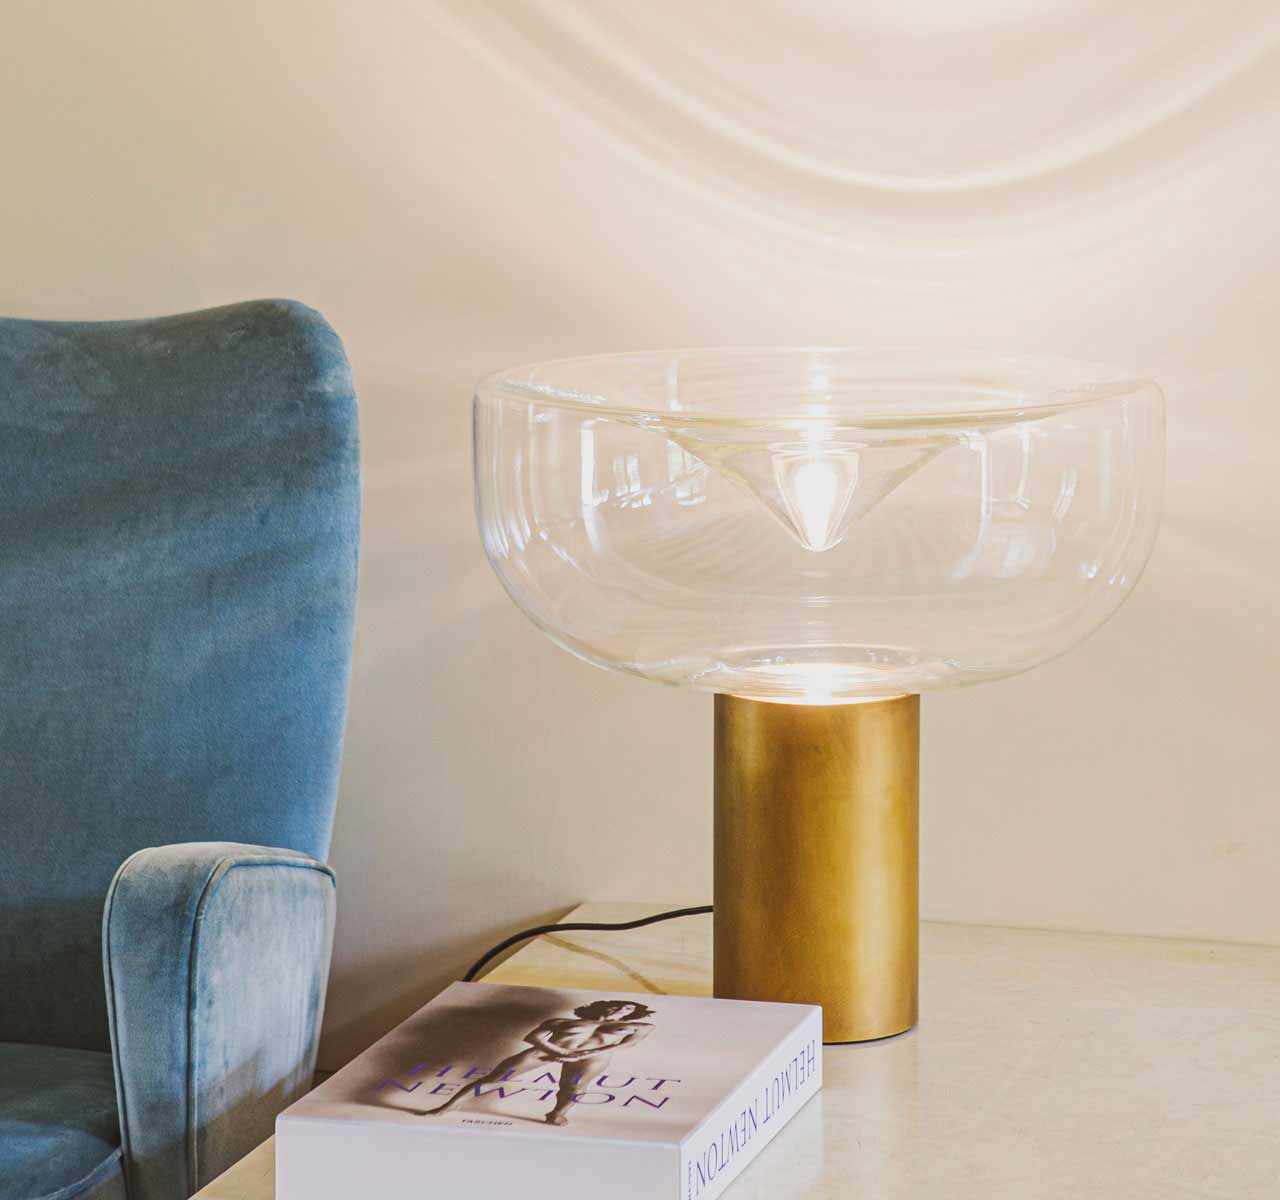 Lampe à poser en verre soufflé de Murano. Lampe design signé Toso et Massari. Vente en ligne de lampes haut de gamme made in Italy. Livraison gratuite.